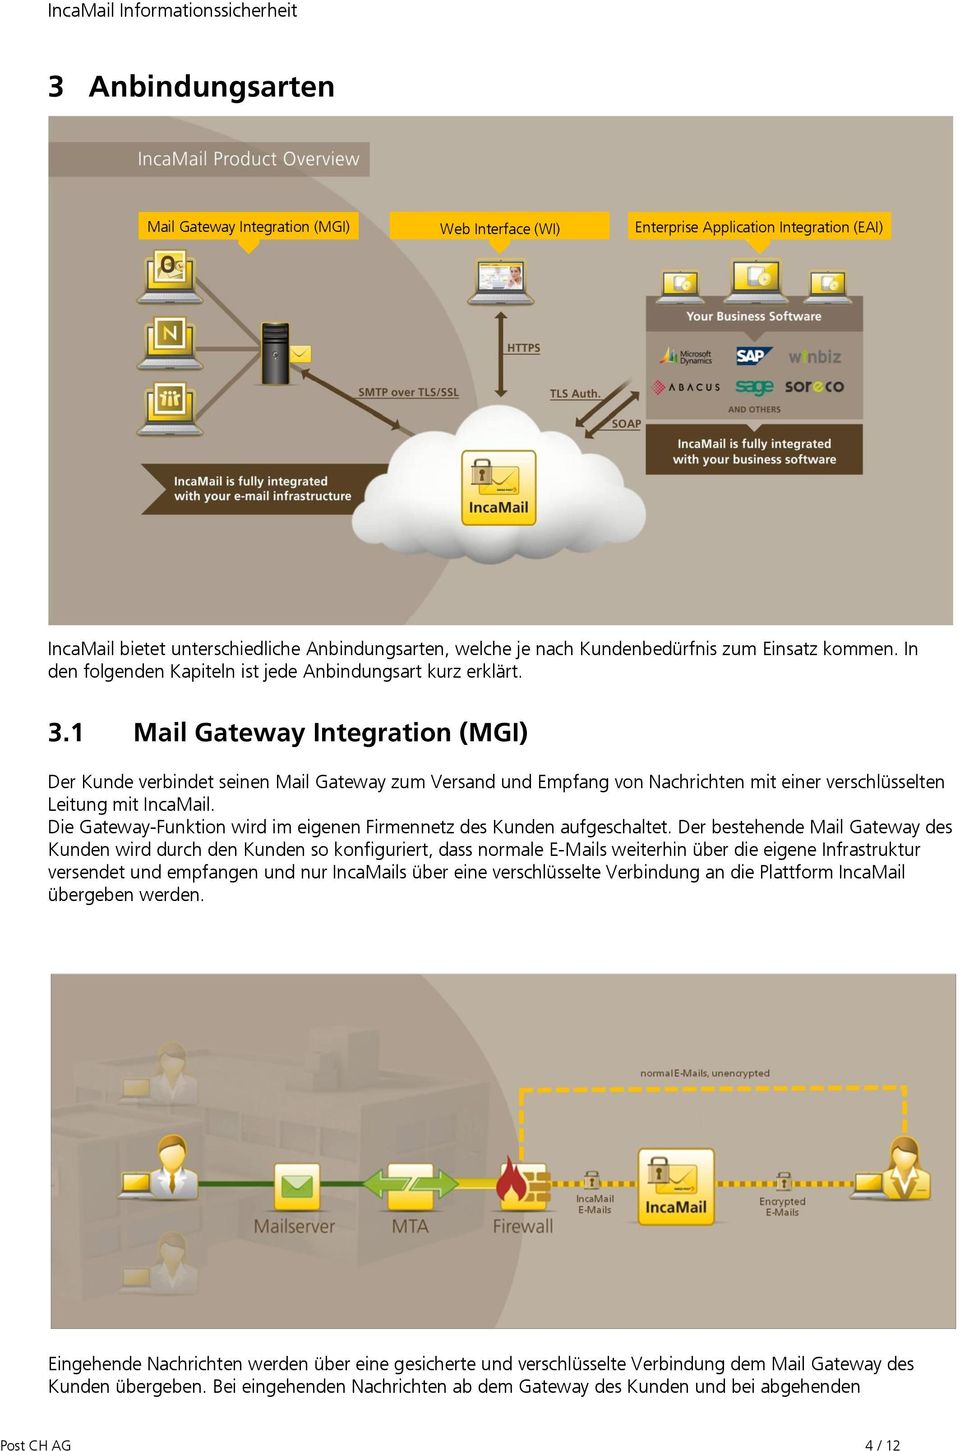 1 Mail Gateway Integration (MGI) Der Kunde verbindet seinen Mail Gateway zum Versand und Empfang von Nachrichten mit einer verschlüsselten Leitung mit IncaMail.